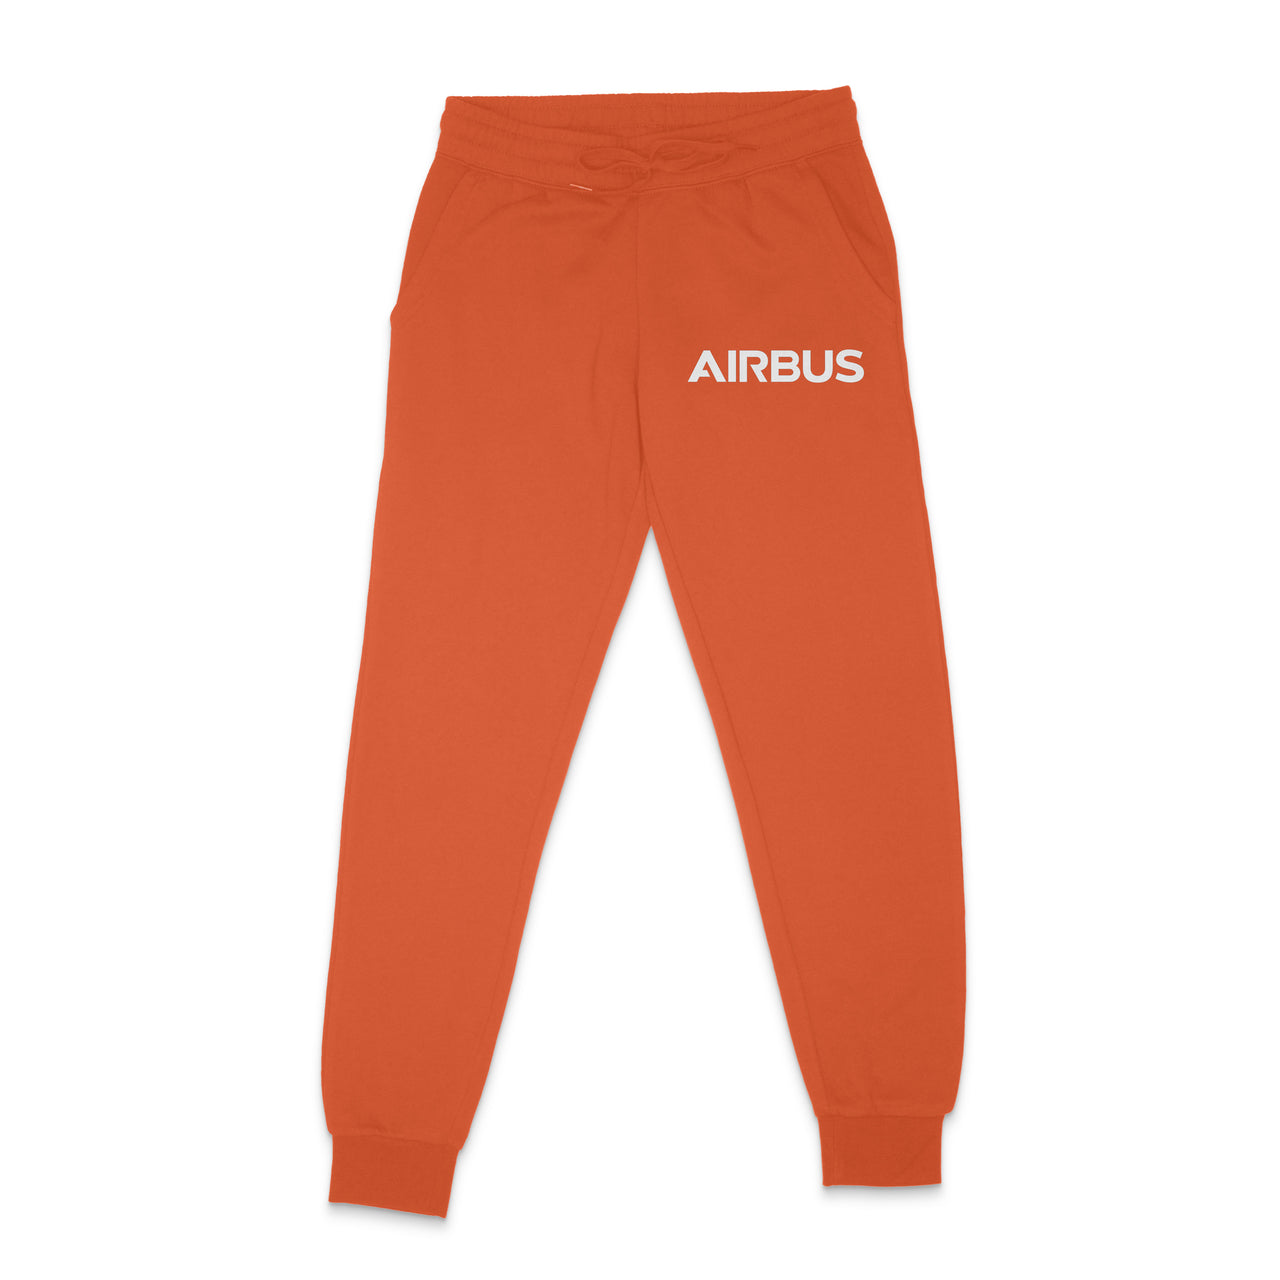 Airbus & Text Designed Sweatpants